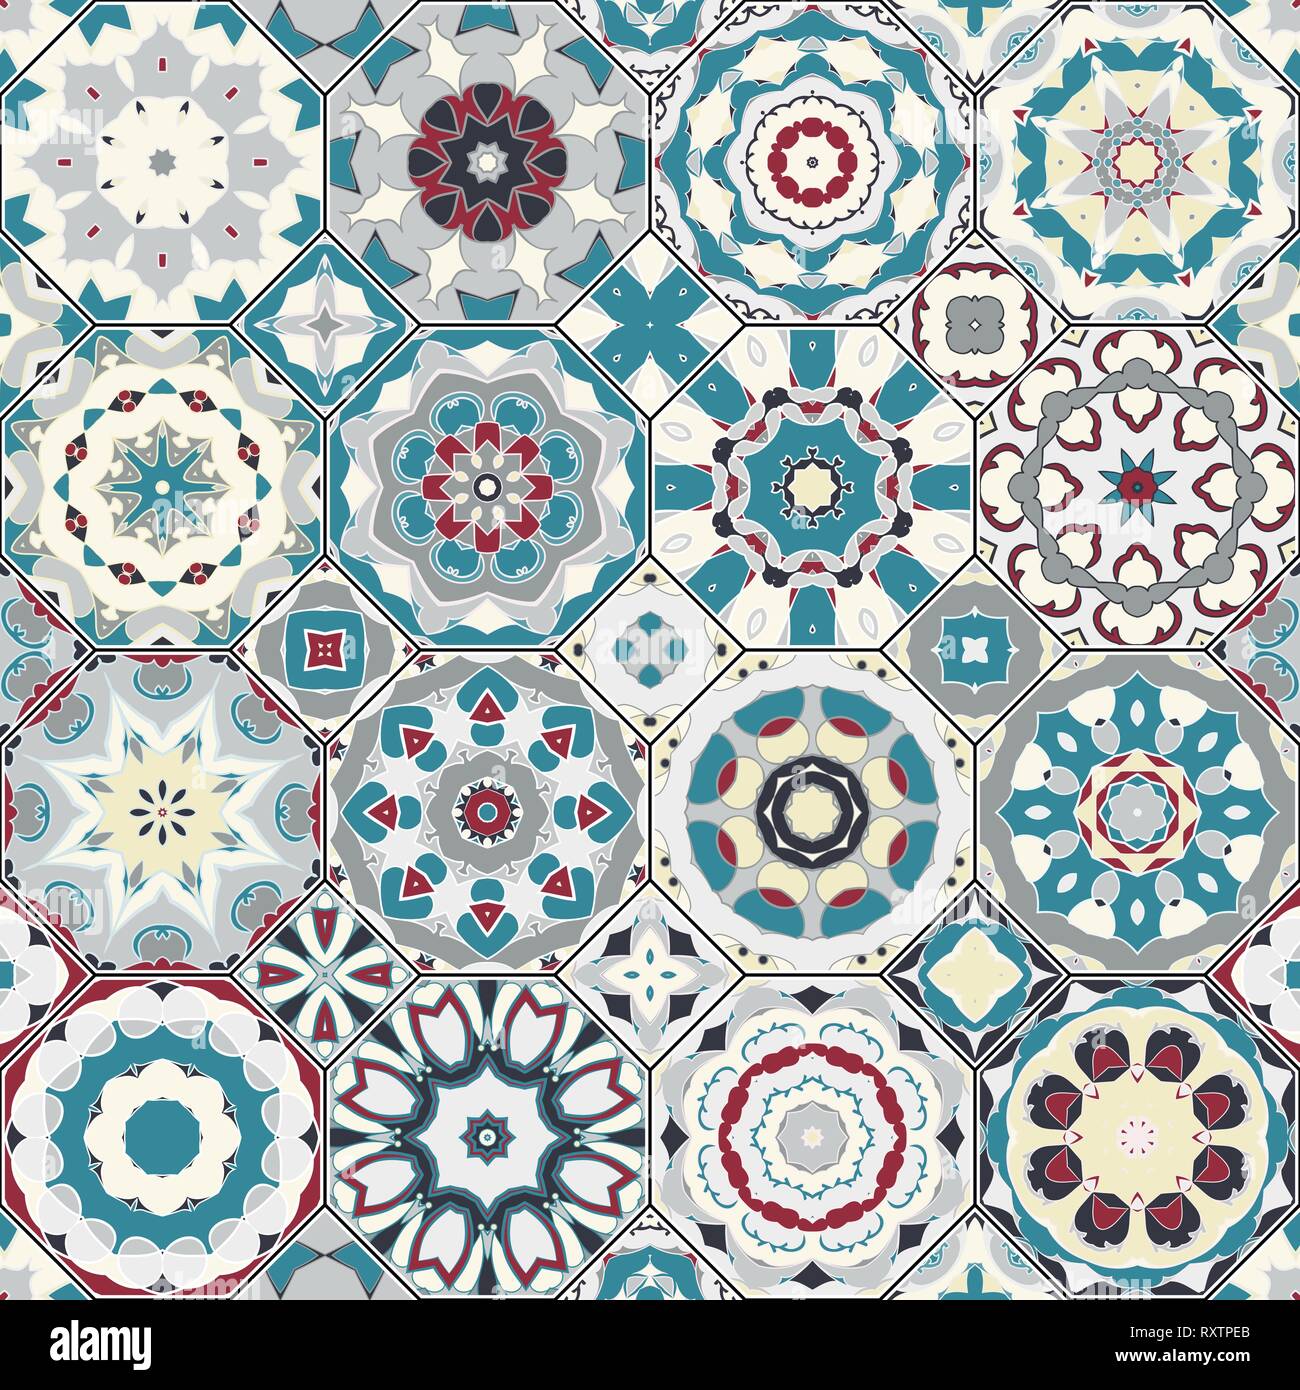 Vektor Sammlung von Square und achteckigen nahtlose Muster im orientalischen Stil. Eine Reihe von bunten Fliesen. Stock Vektor